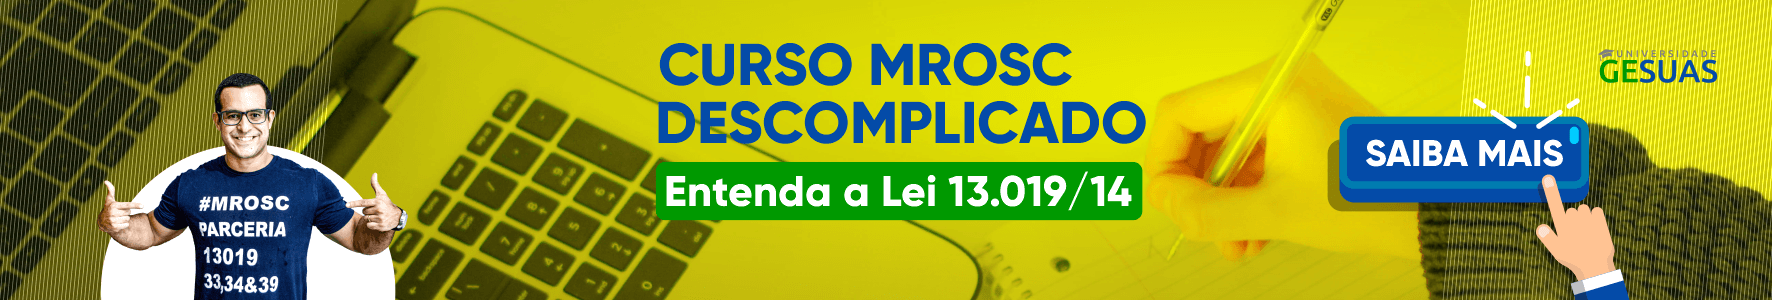 Curso MROSC Descomplicado: a Lei 13.019/14 sem juridiquês!